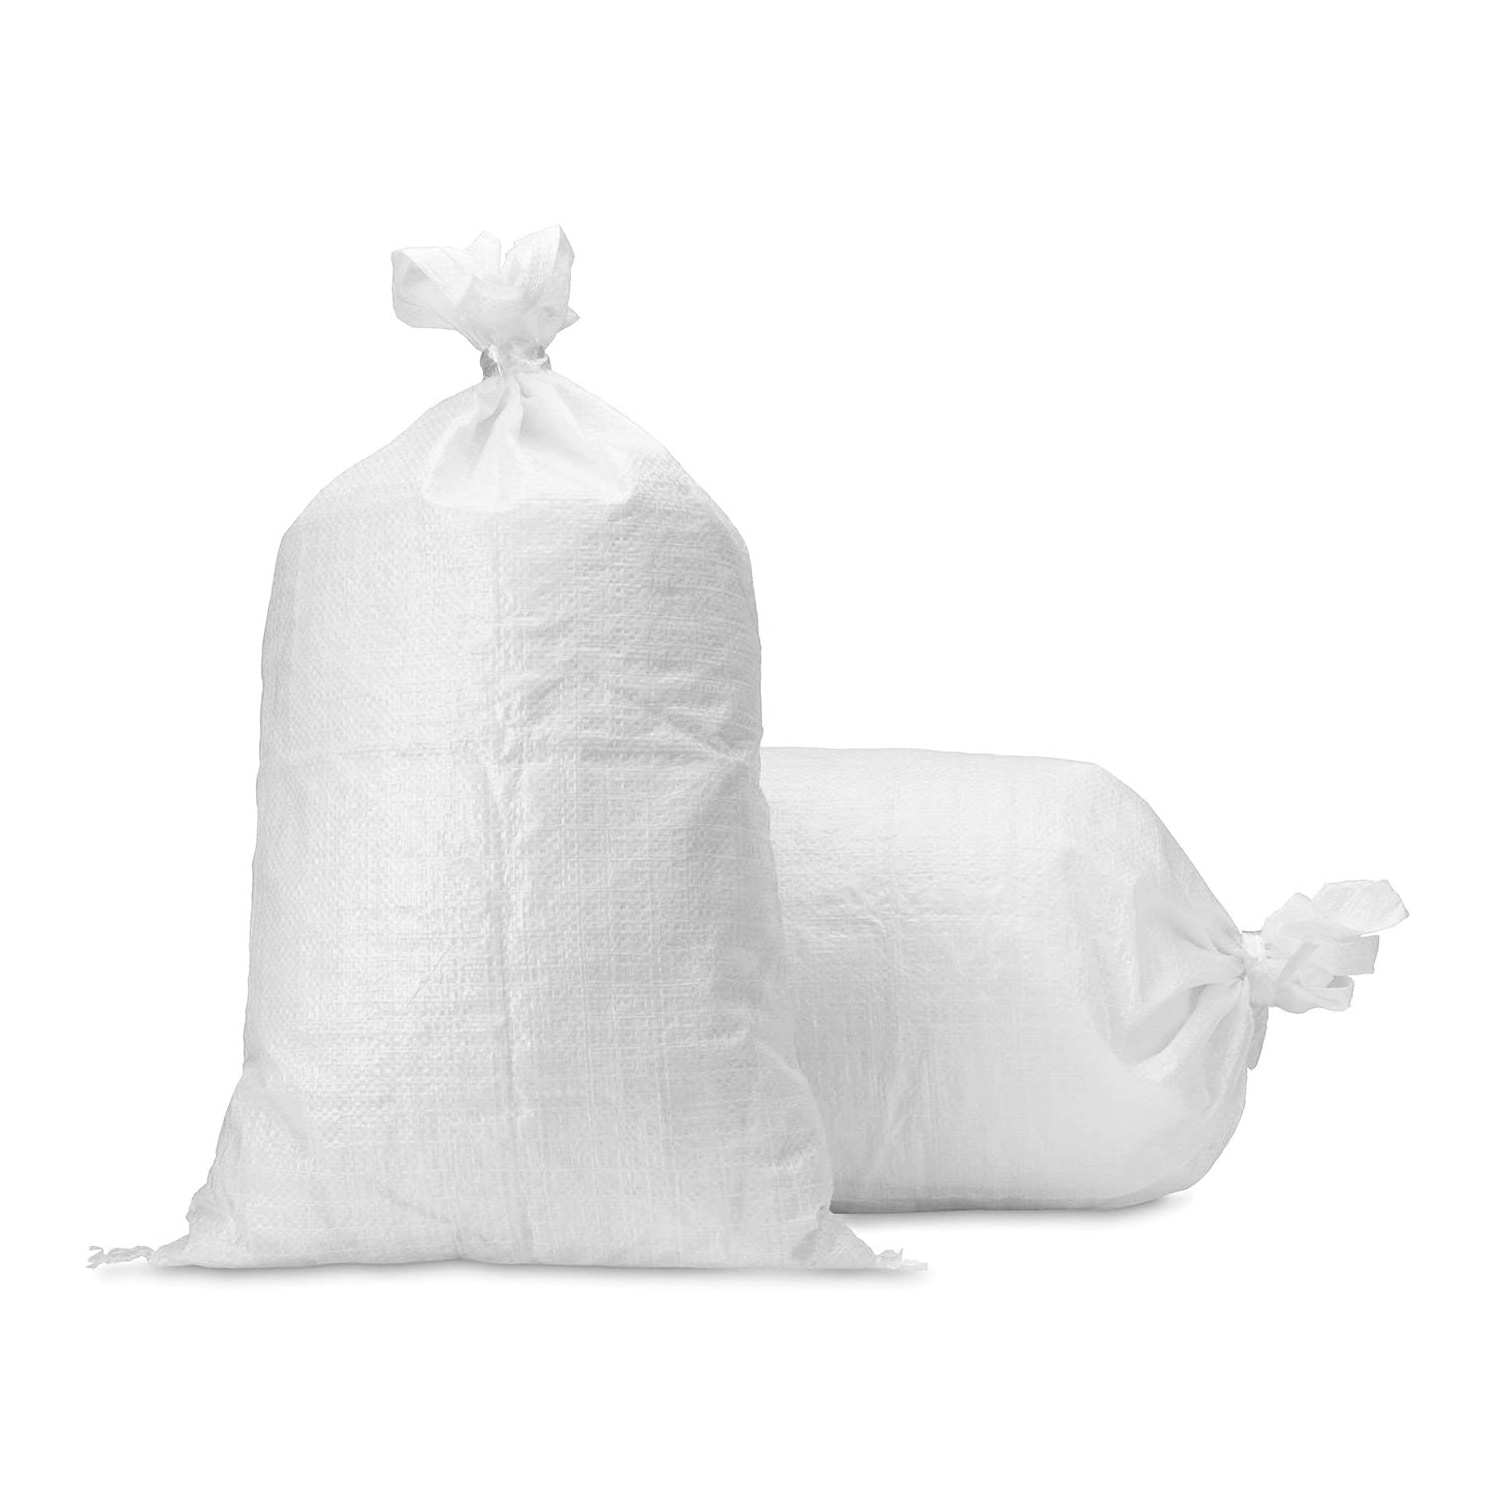 5 Woven POLYPROPYLENE Bags Sacks 60 x 100 PP Rubble Heavy Duty Bags Sandbags 